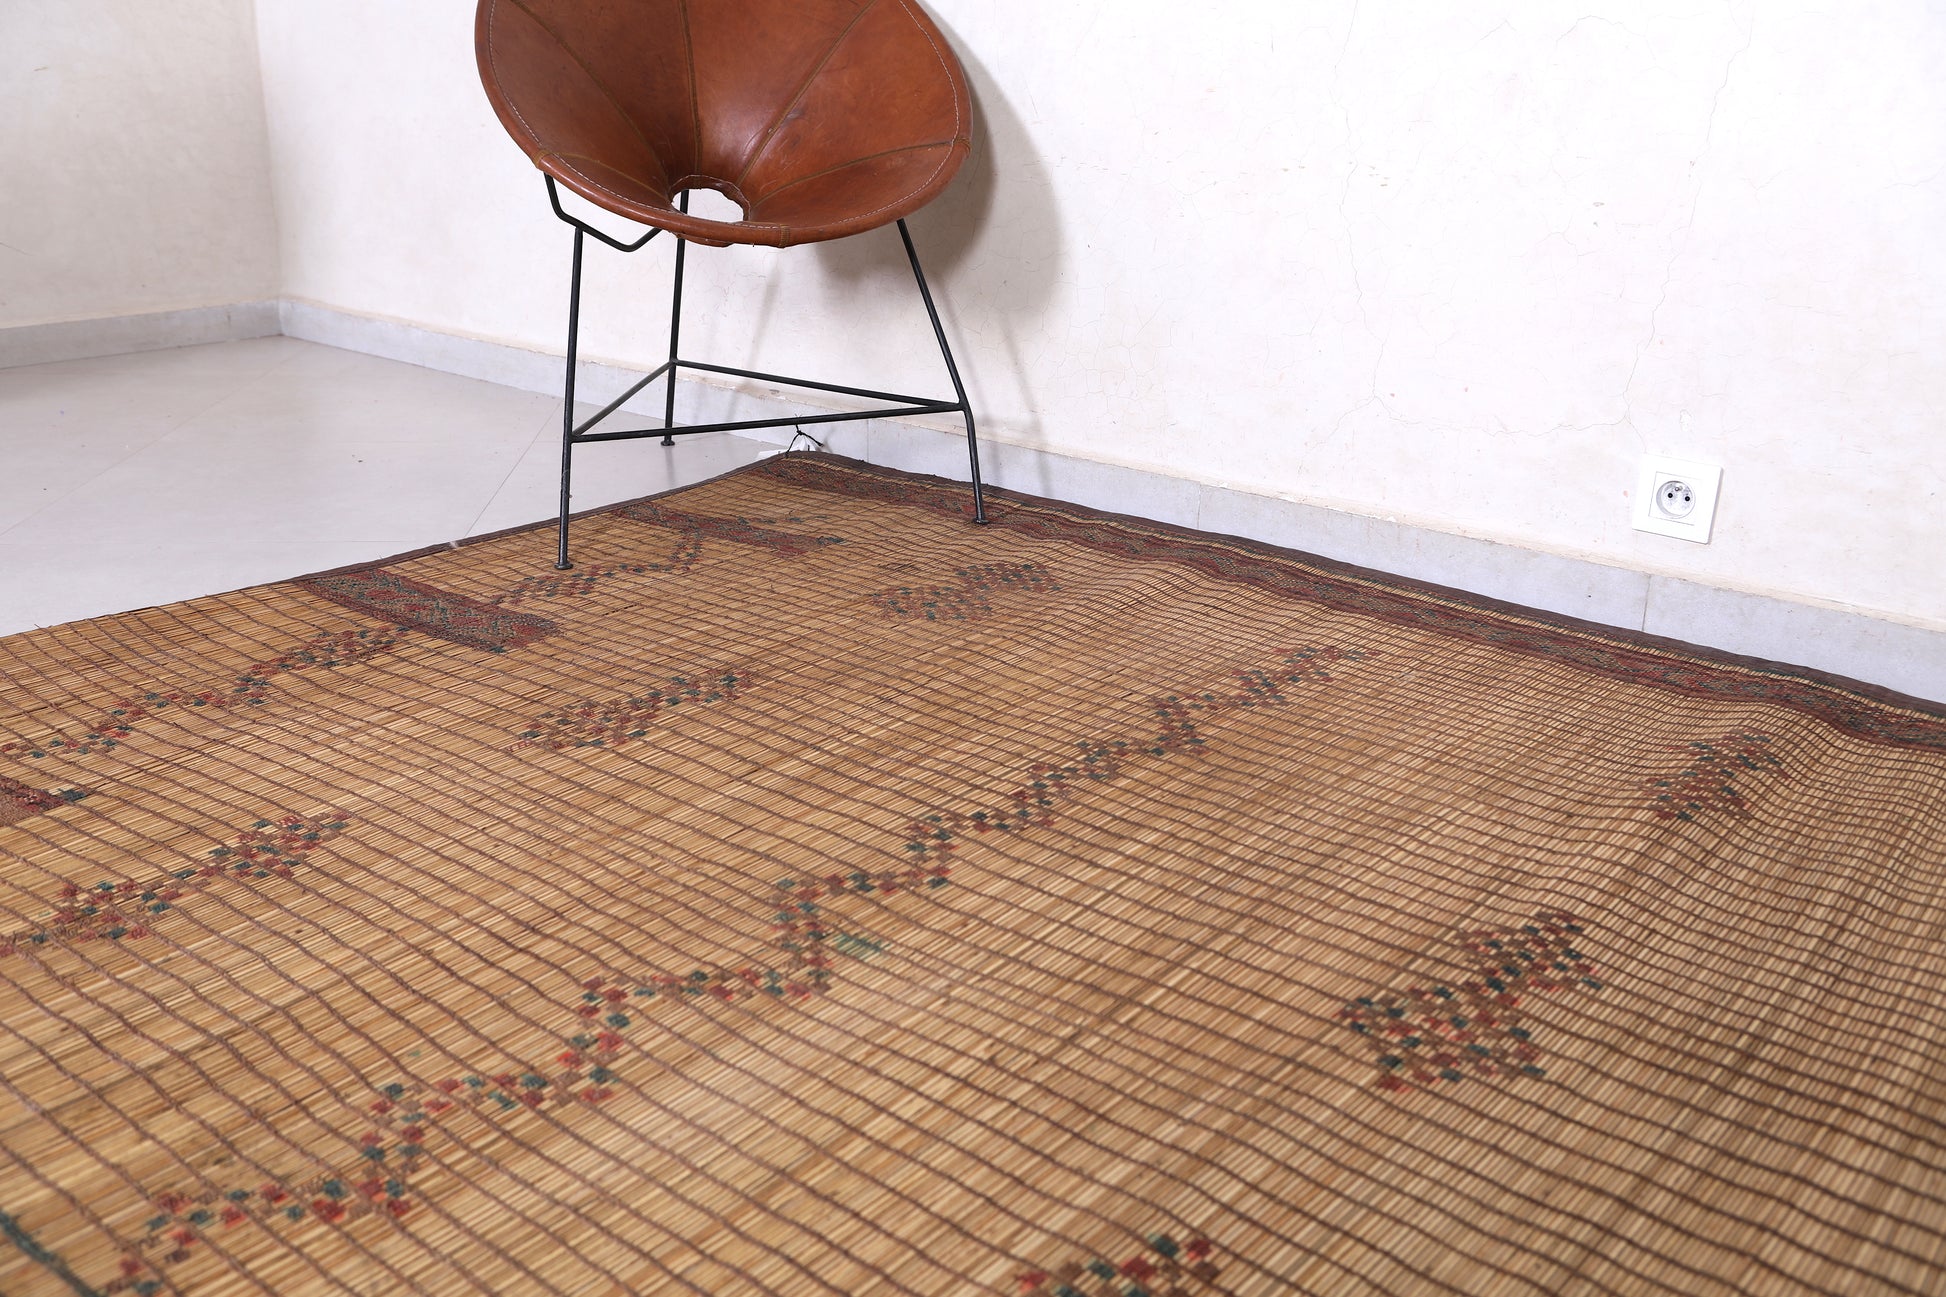 Vintage handmade tuareg rug 5.8 X 8.5 Feet